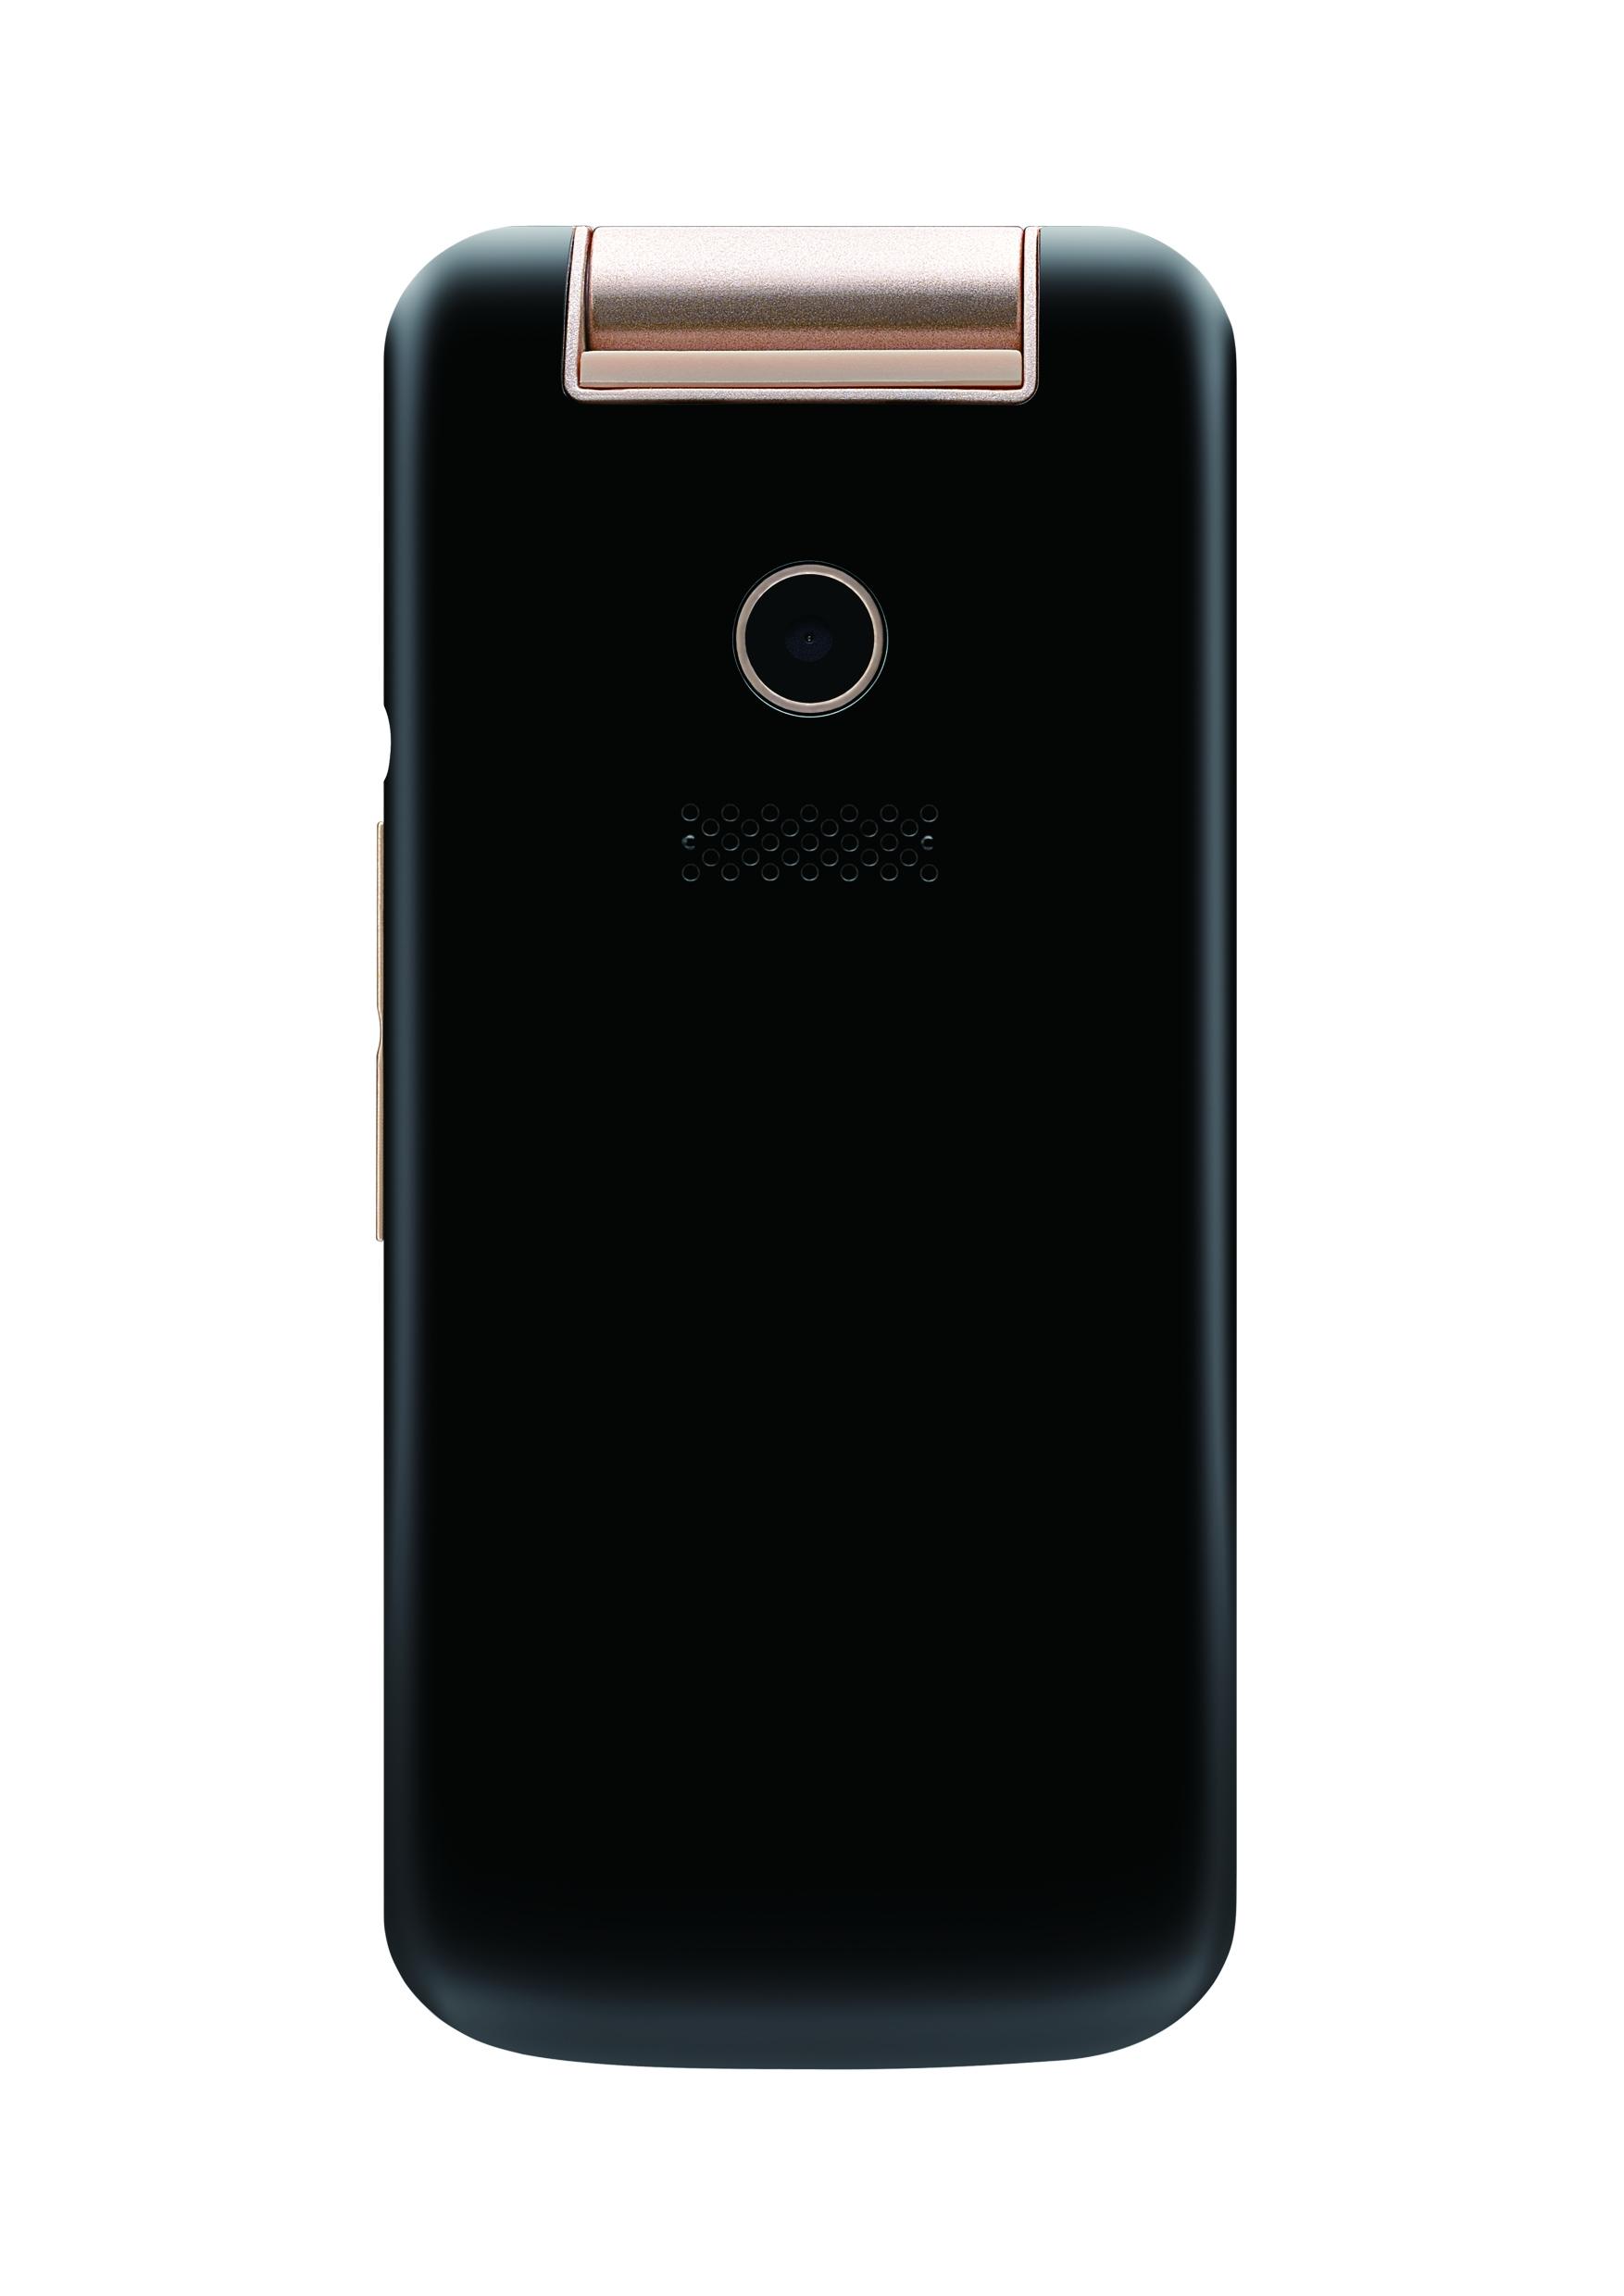 Мобильный телефон Philips Xenium E255, 2.4" 320x240 TFT, MediaTek MT6261, 32Mb RAM, 32Mb, BT, 2-Sim, 1.05 А·ч, черный